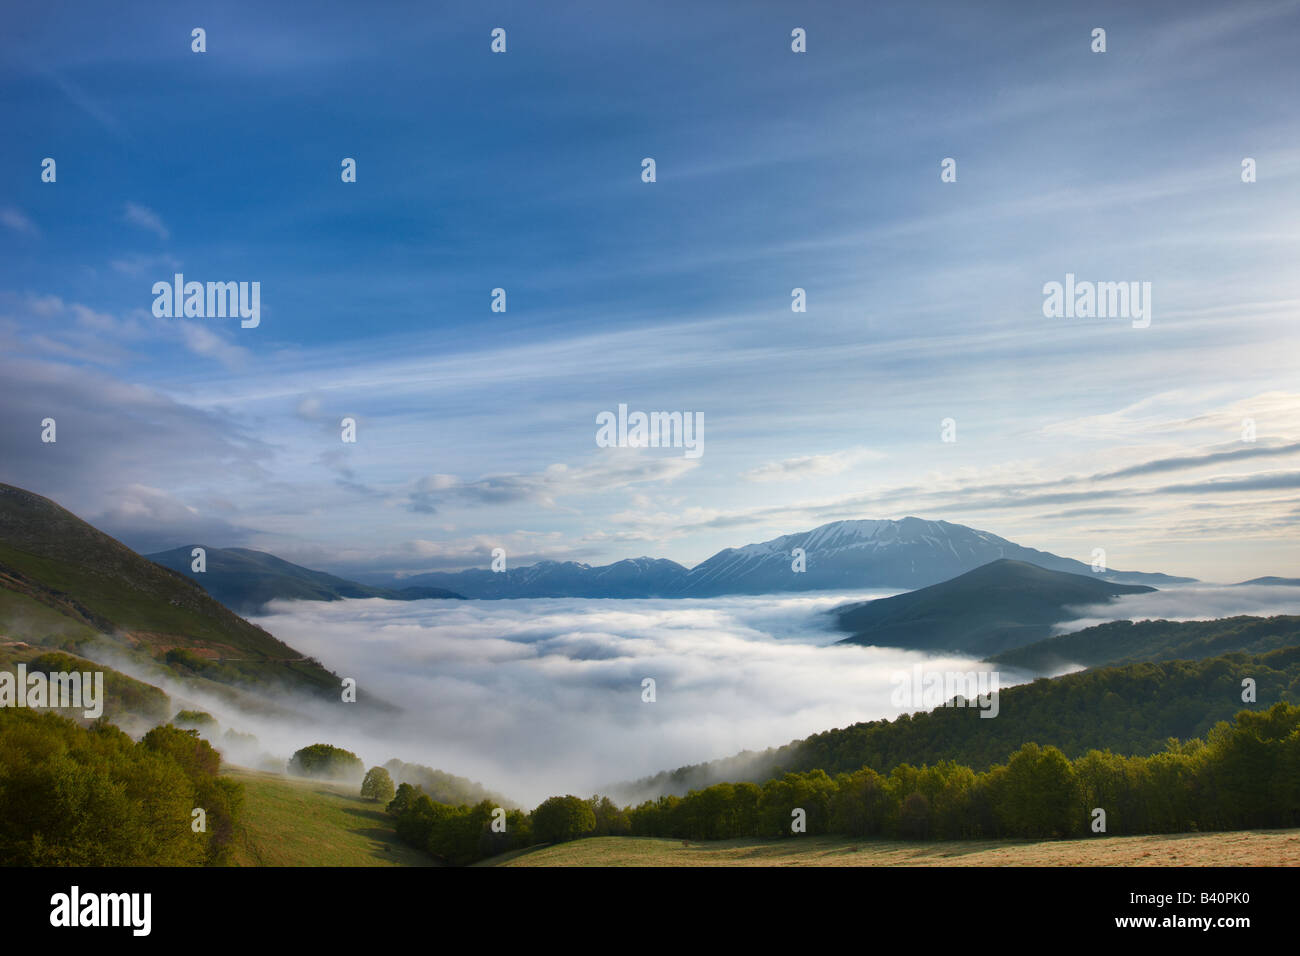 La nebbia giacente sul piano Grande all'alba con le montagne del Parco Nazionale dei Monti Sibillini che si eleva al di sopra, Umbria, Italia Foto Stock